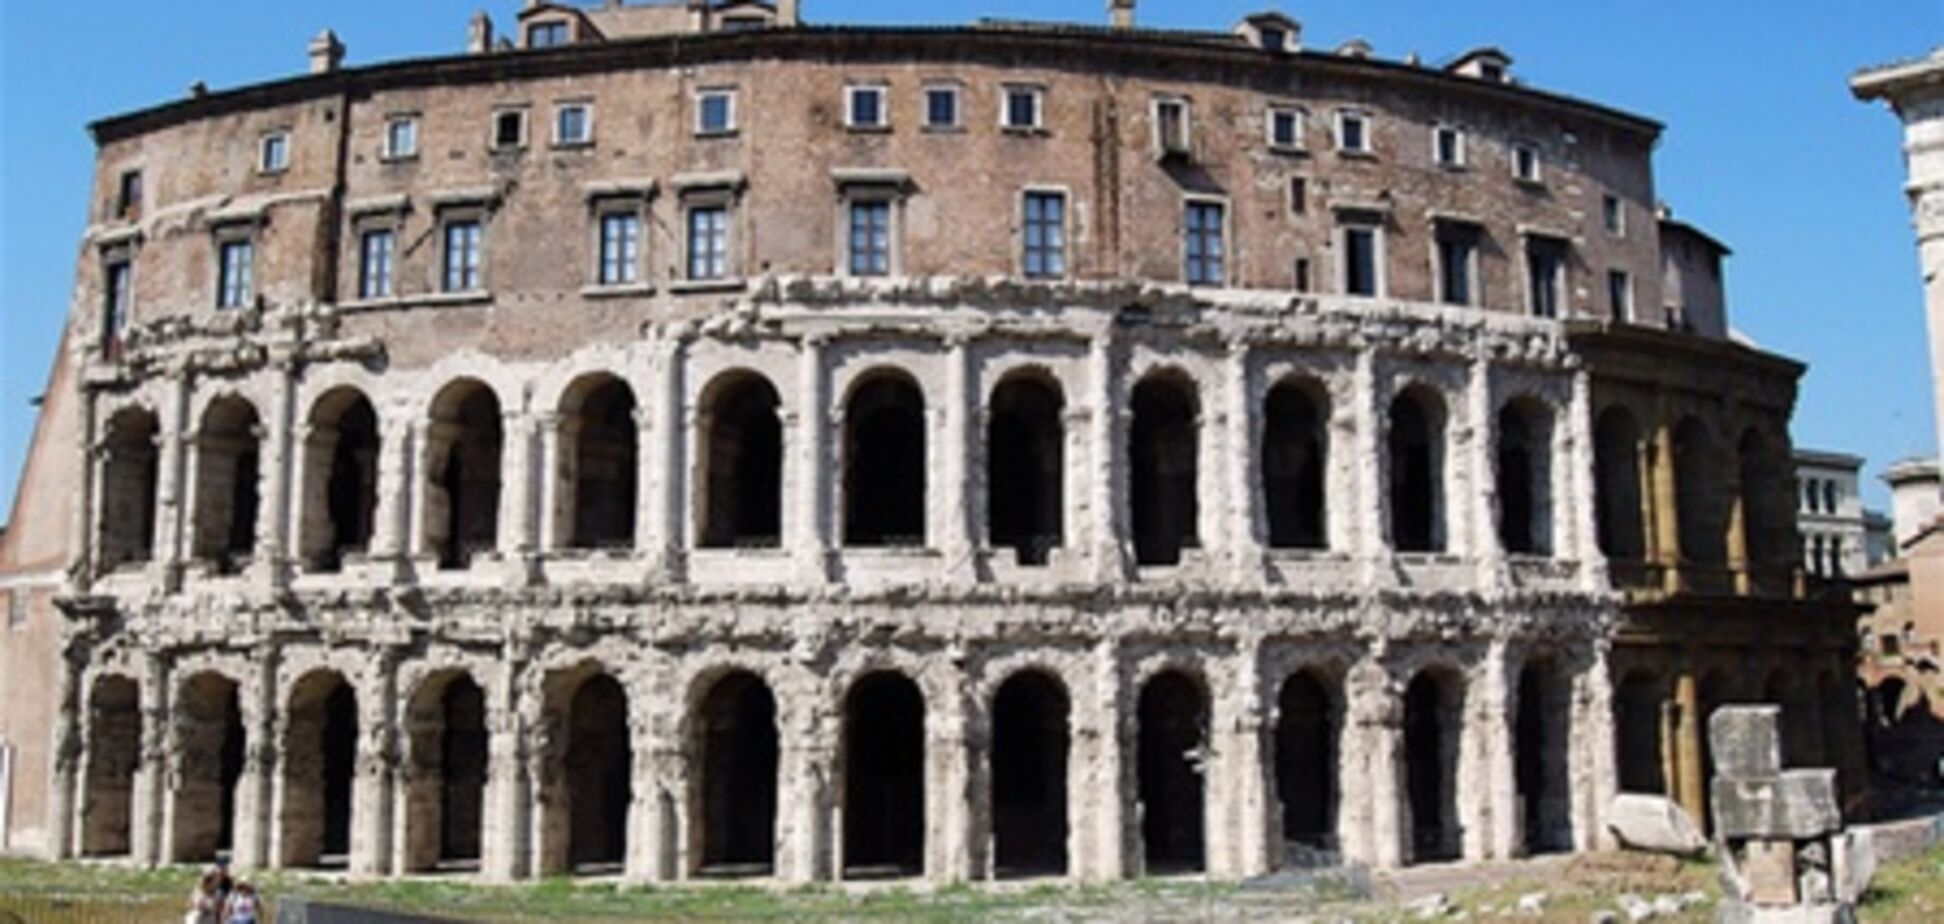 Аренда комнаты в Риме стоит 6600 гривен